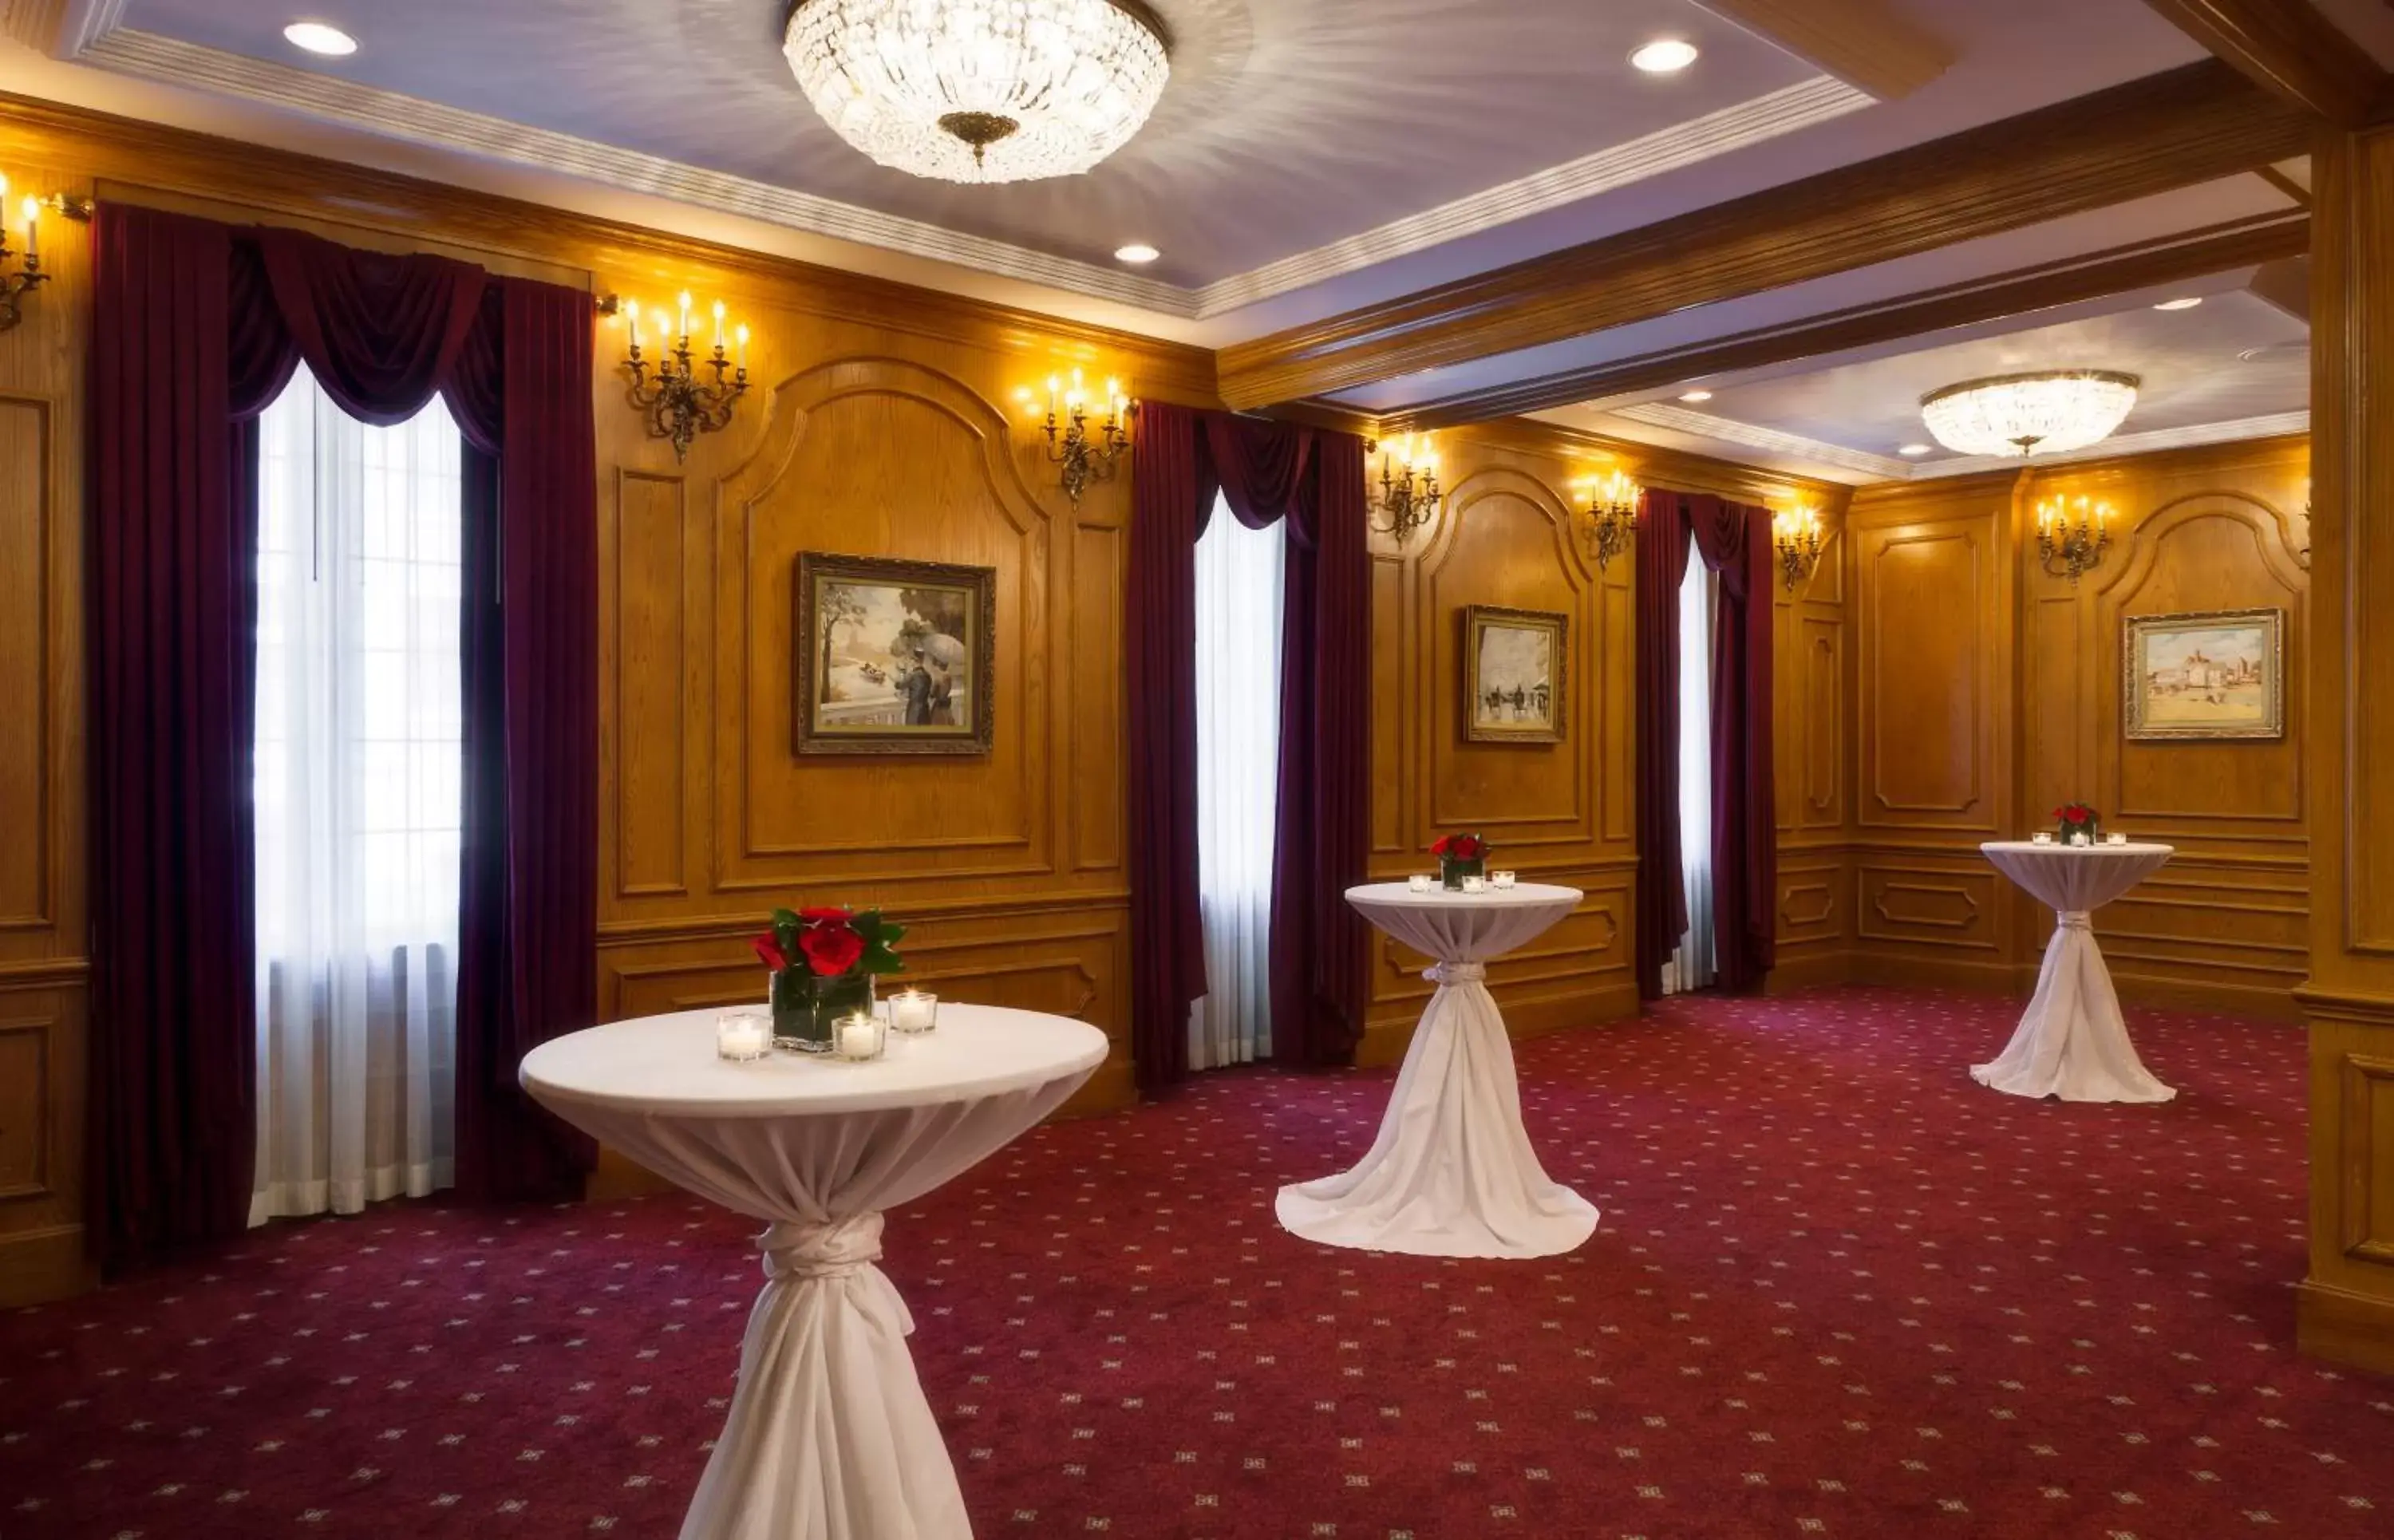 Banquet/Function facilities, Banquet Facilities in Millennium Knickerbocker Chicago